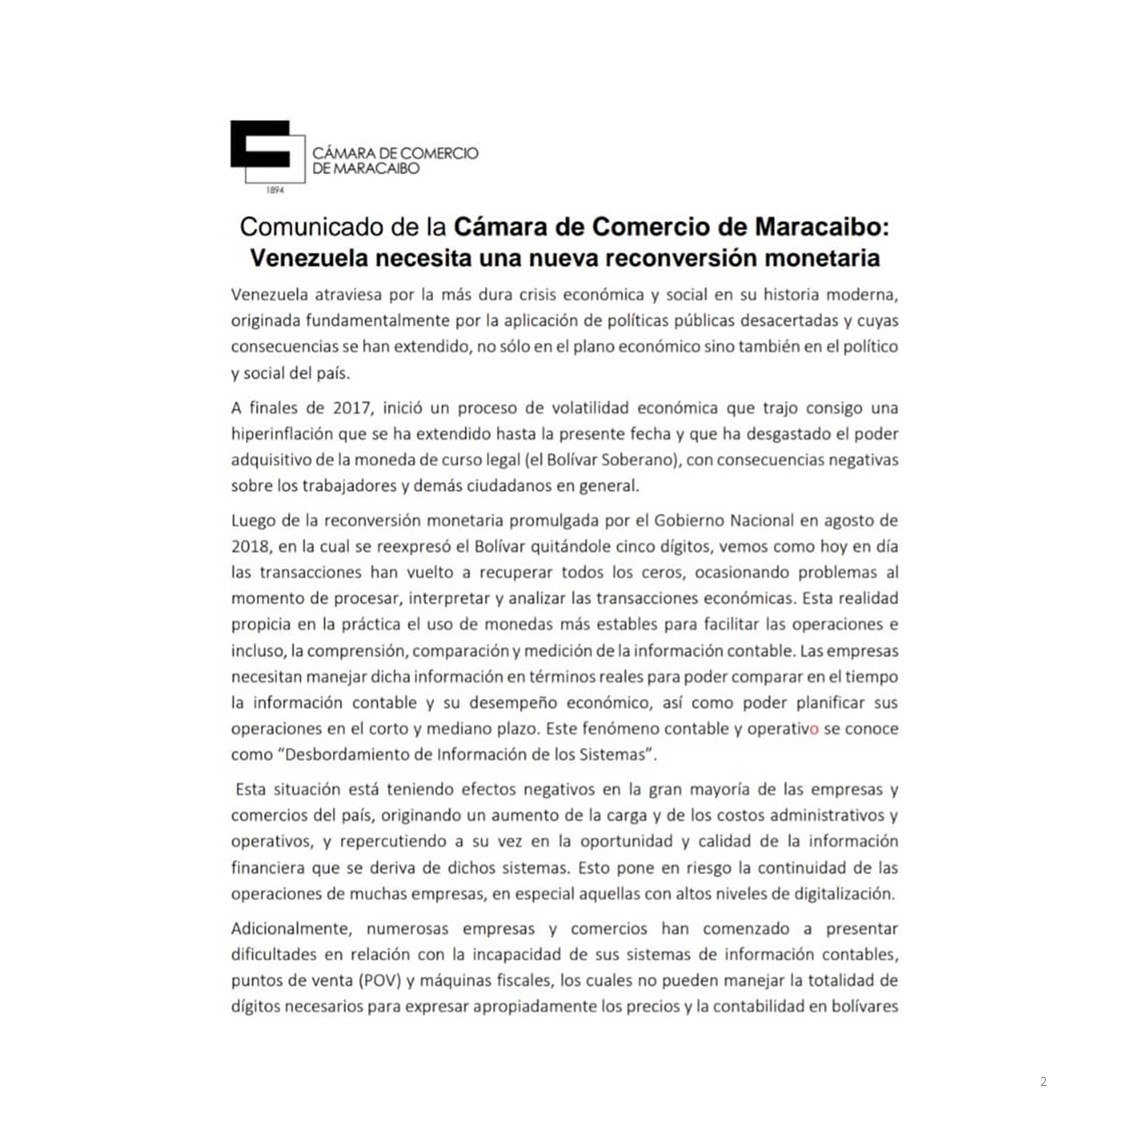 Cámara de Comercio de Maracaibo demanda al BCV una reconversión monetaria urgente